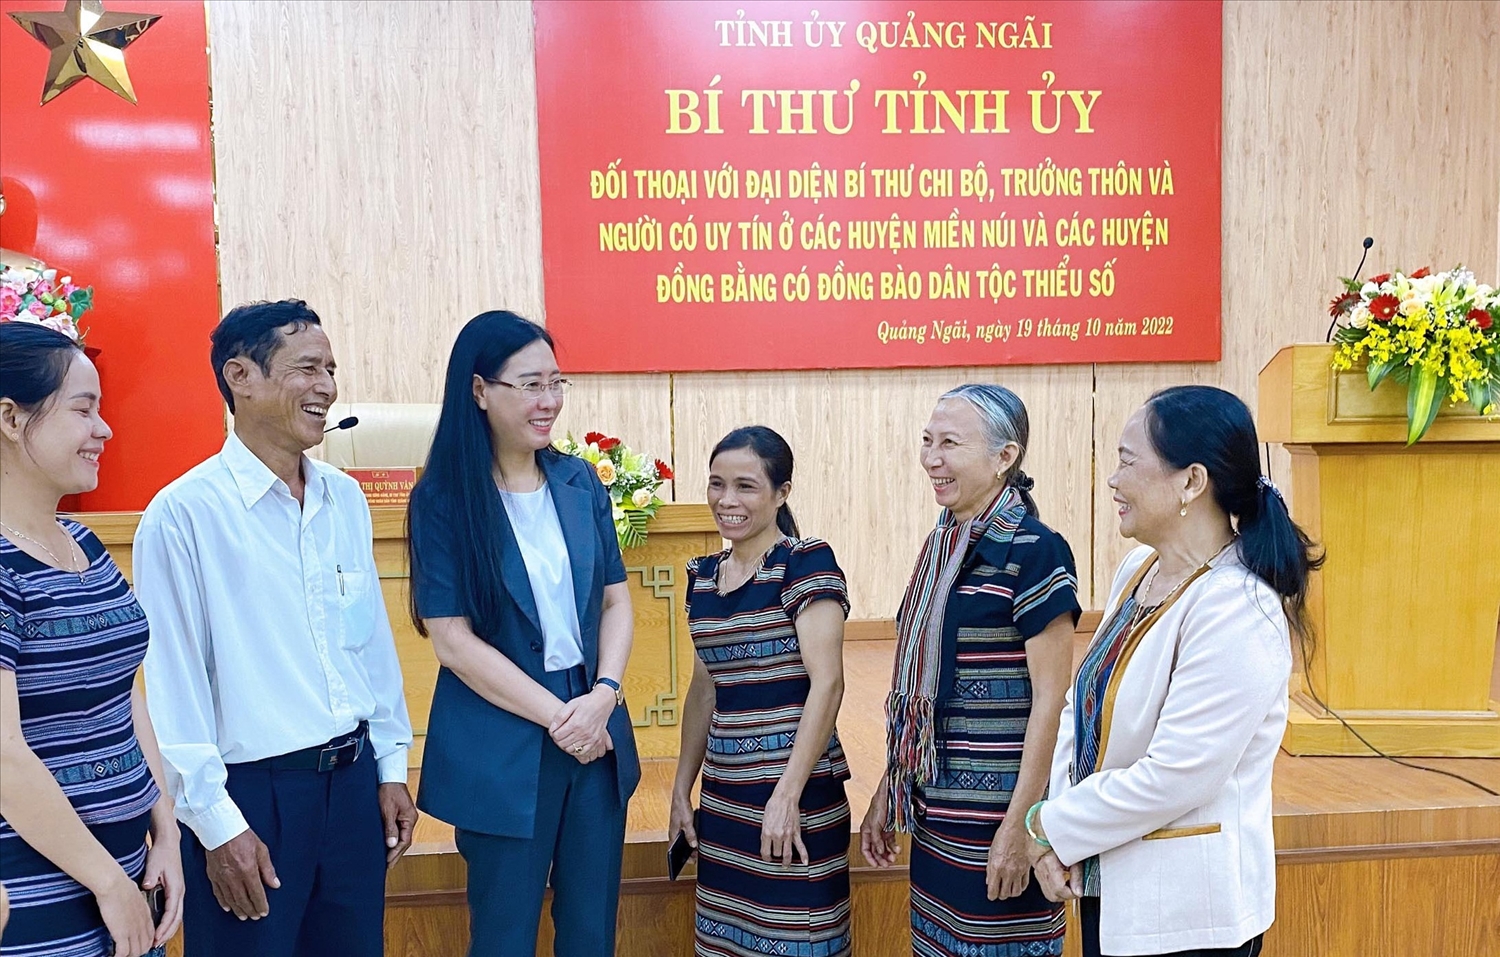 Bí thư Tỉnh ủy Quảng Ngãi Bùi Thị Quỳnh Vân đối thoại với Người có uy tín trong đồng bào DTTS